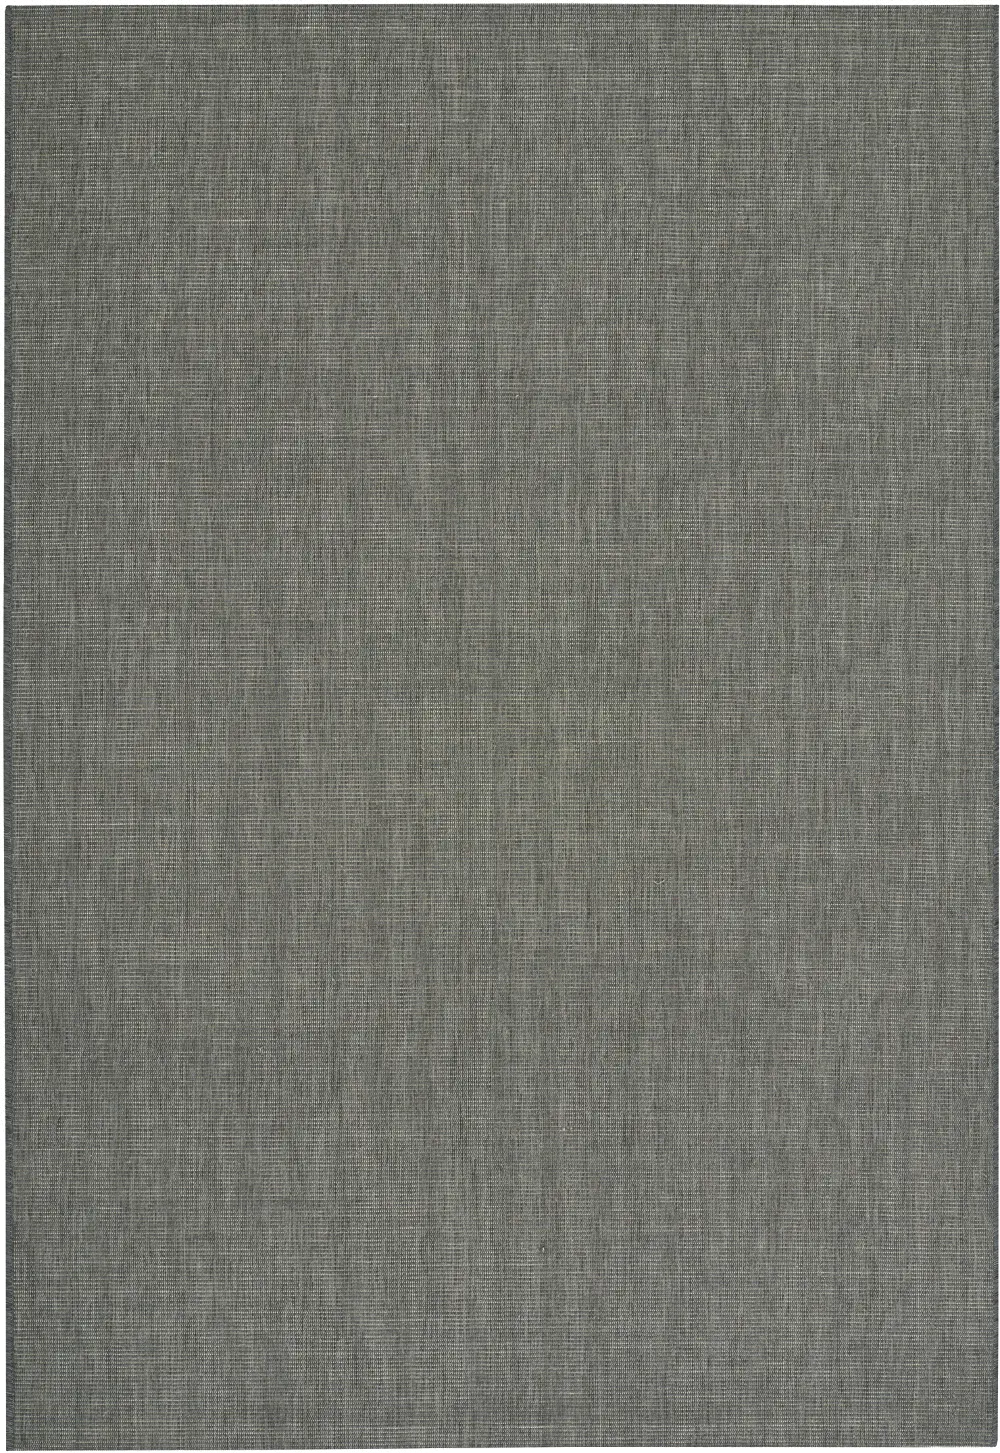 477430058 5 x 8 Medium Charcoal Gray Indoor-Outdoor Rug - Weatherwise-1